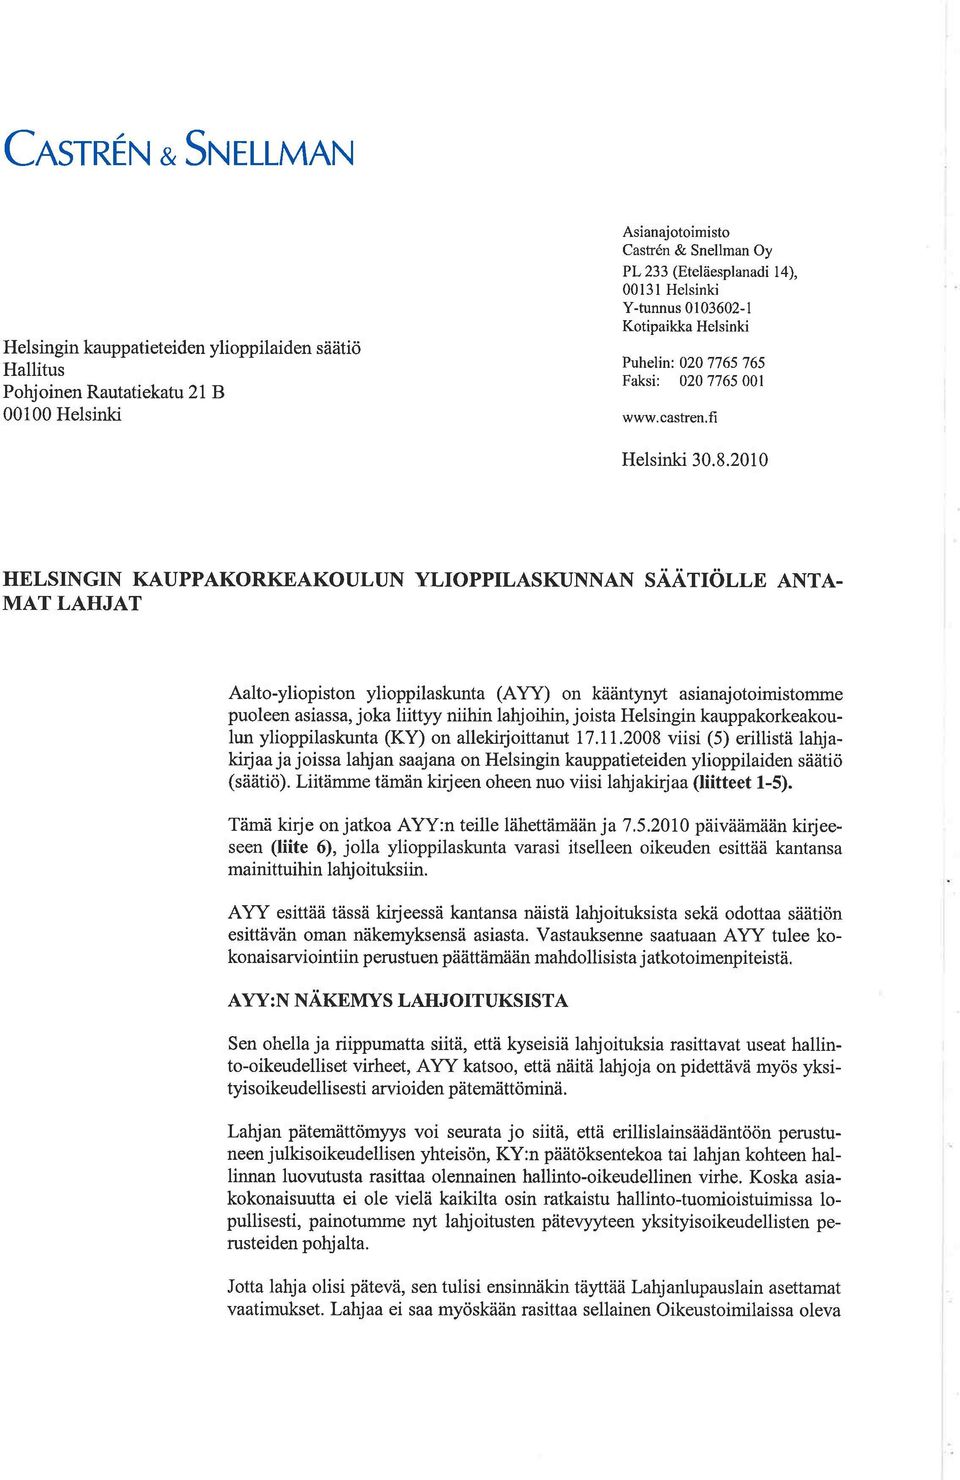 MAT LAHJAT Aalto-yliopiston ylioppilaskunta (AYY) on kääntynyt asianajotoimistomme puoleen asiassa, joka liittyy niihin lahjoihin, joista Helsingin kauppakorkeakoulun ylioppilaskunta (KY) on